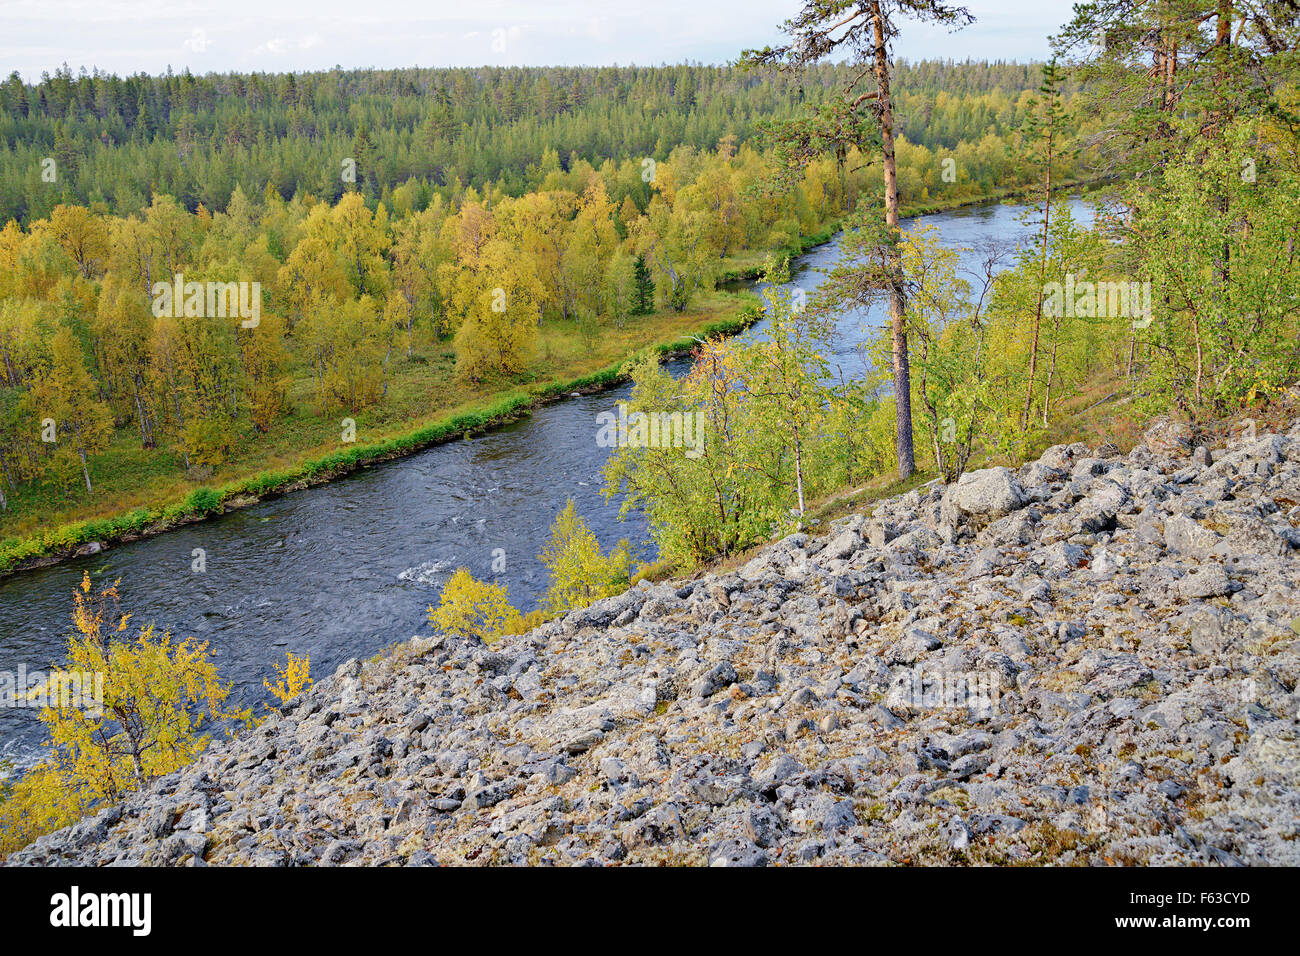 Nuortti River, le Parc National Urho Kekkonen, la Laponie. Banque D'Images